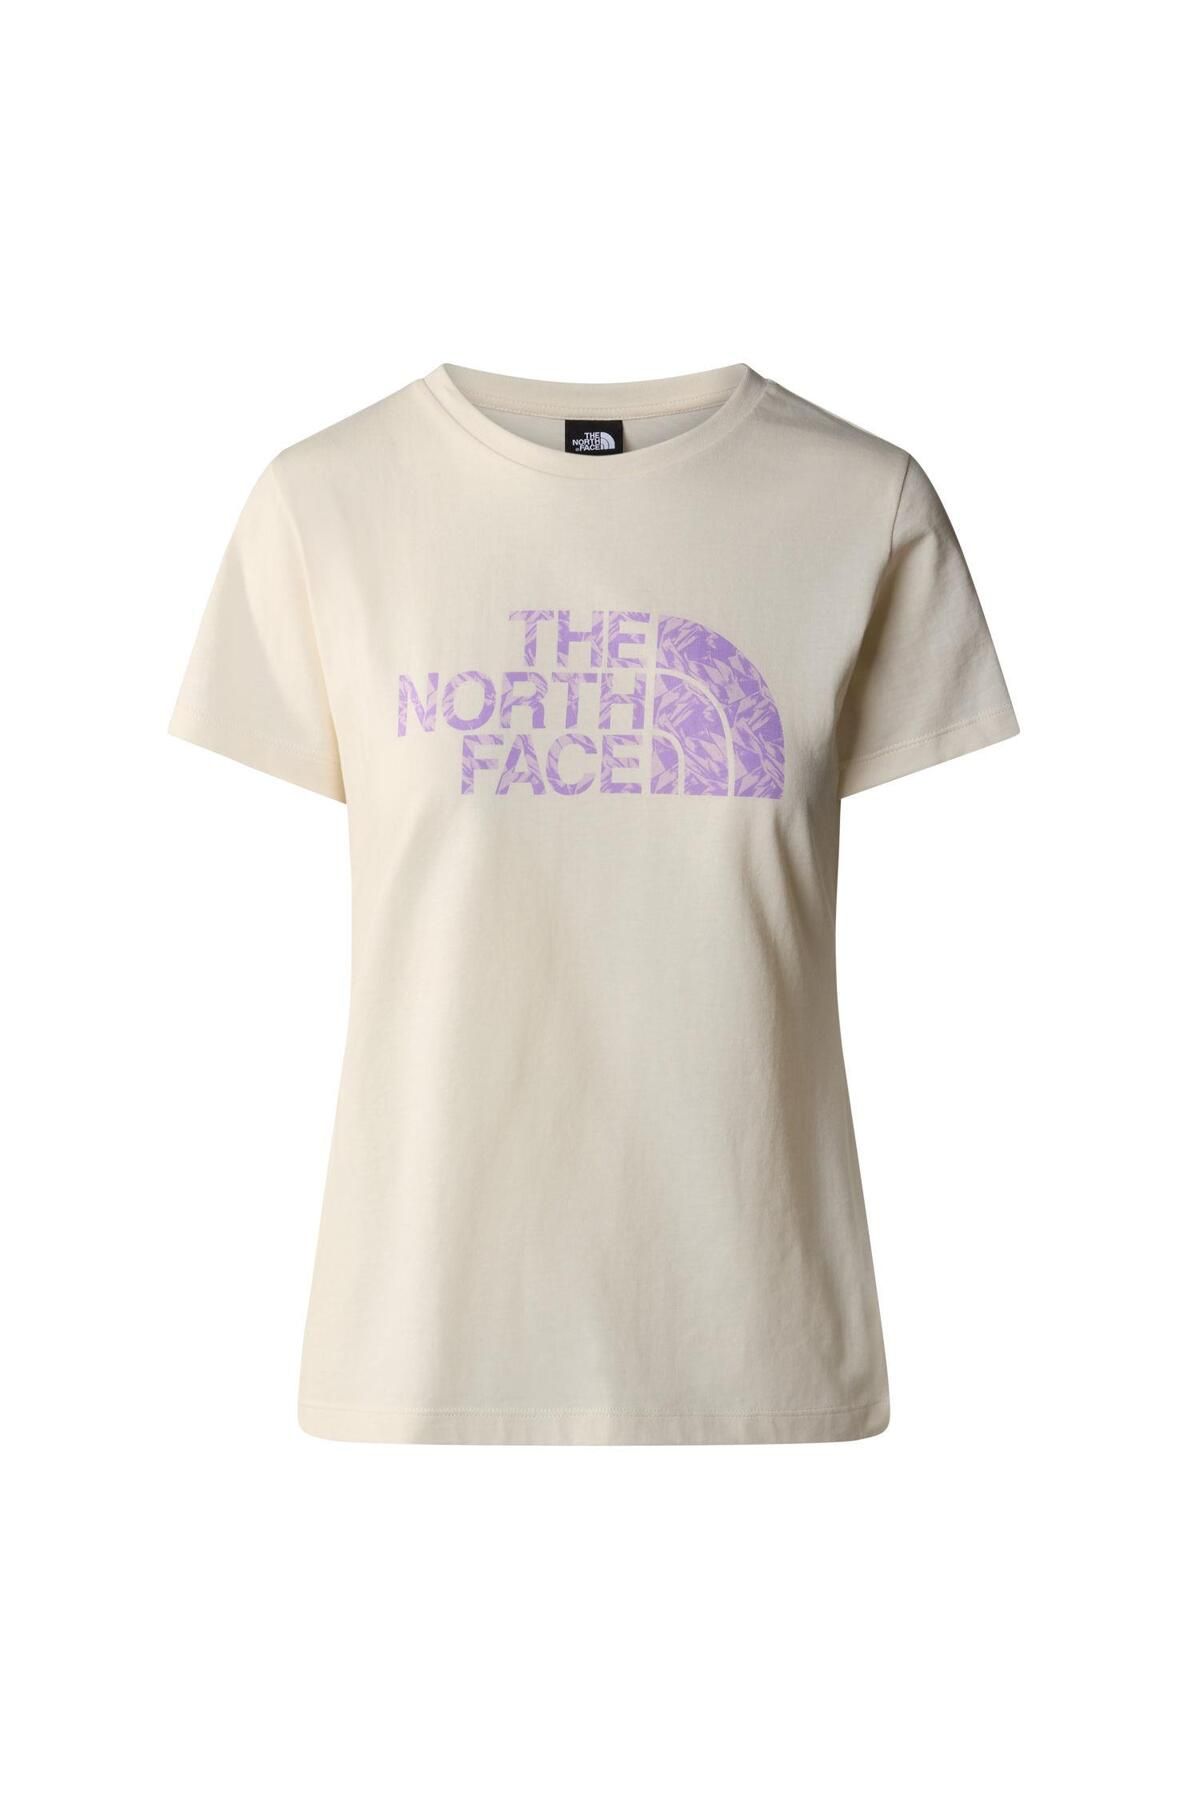 The North Face W S/s Easy Tee Kadın T-shirt Nf0a87n6yfo1 Beyaz-s